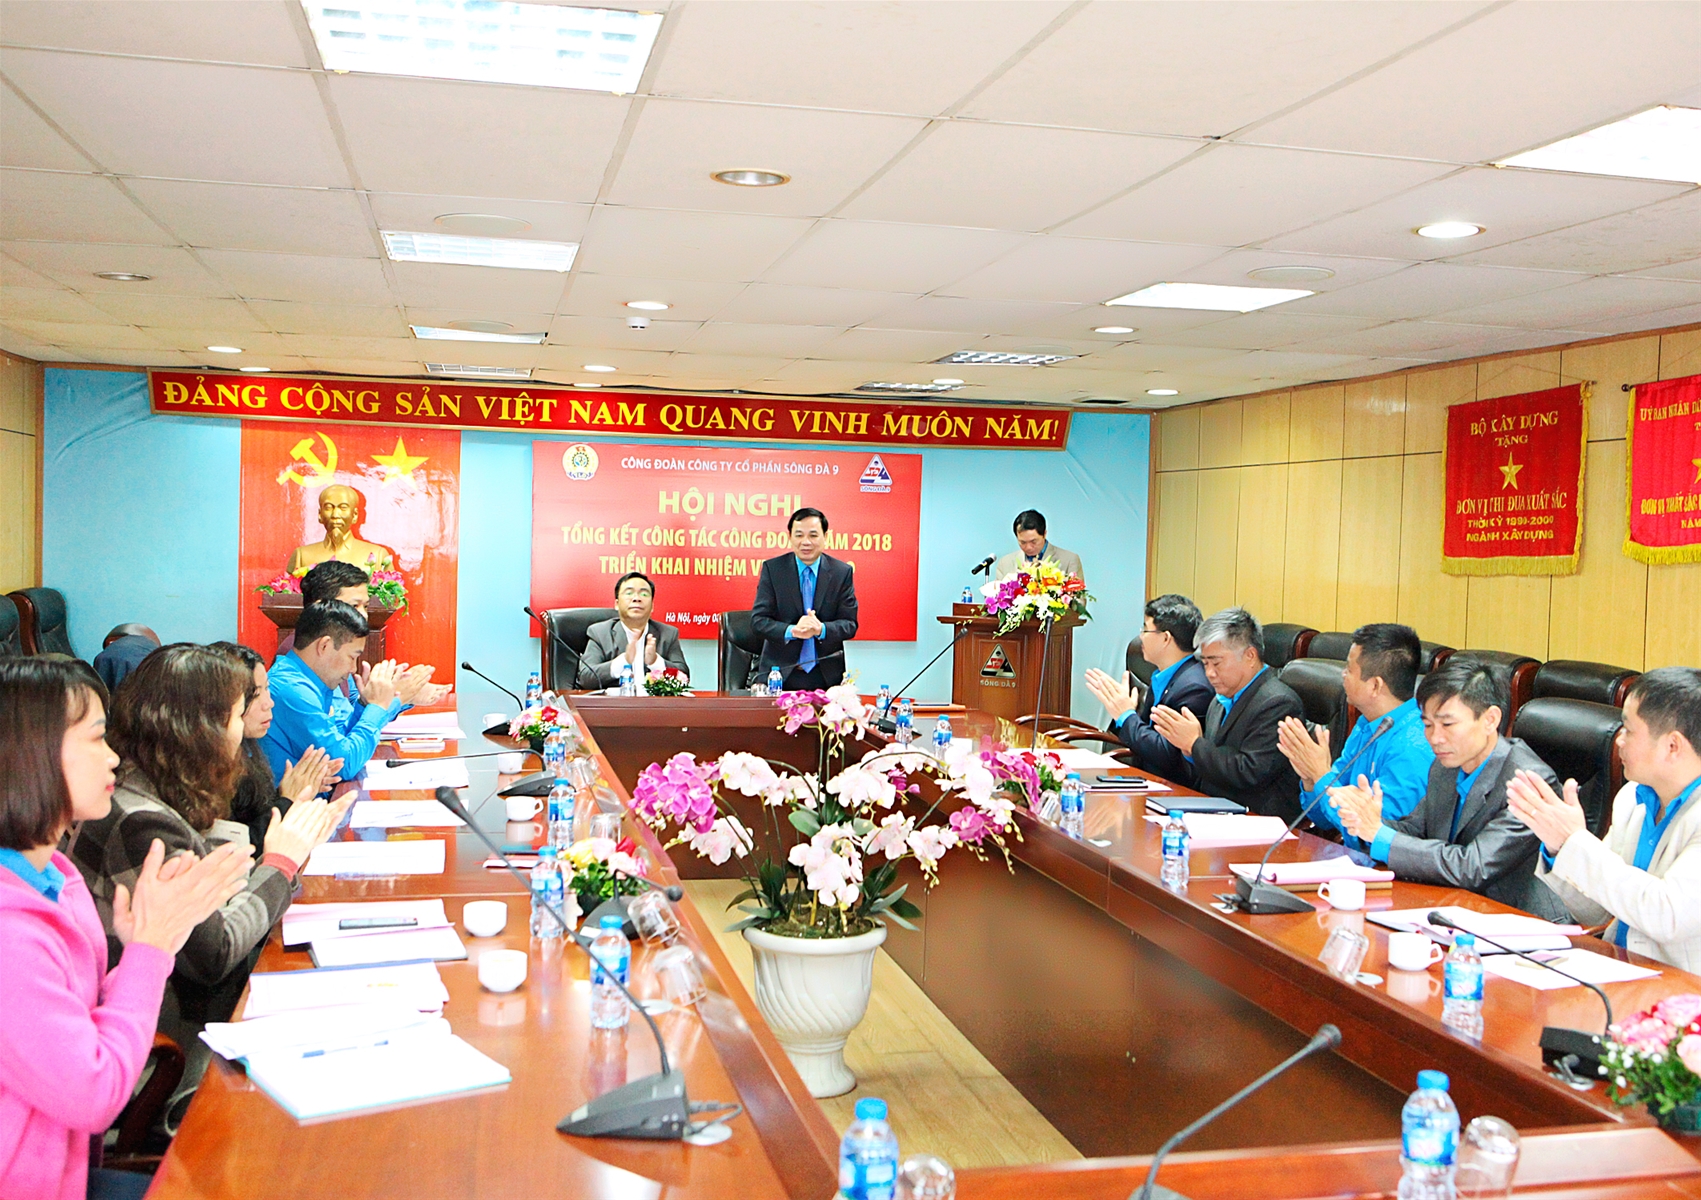 Hội nghị Tổng kết công tác Công đoàn năm 2018, triển khai nhiệm vụ năm 2019 Công đoàn Công ty cổ phần Sông Đà 9